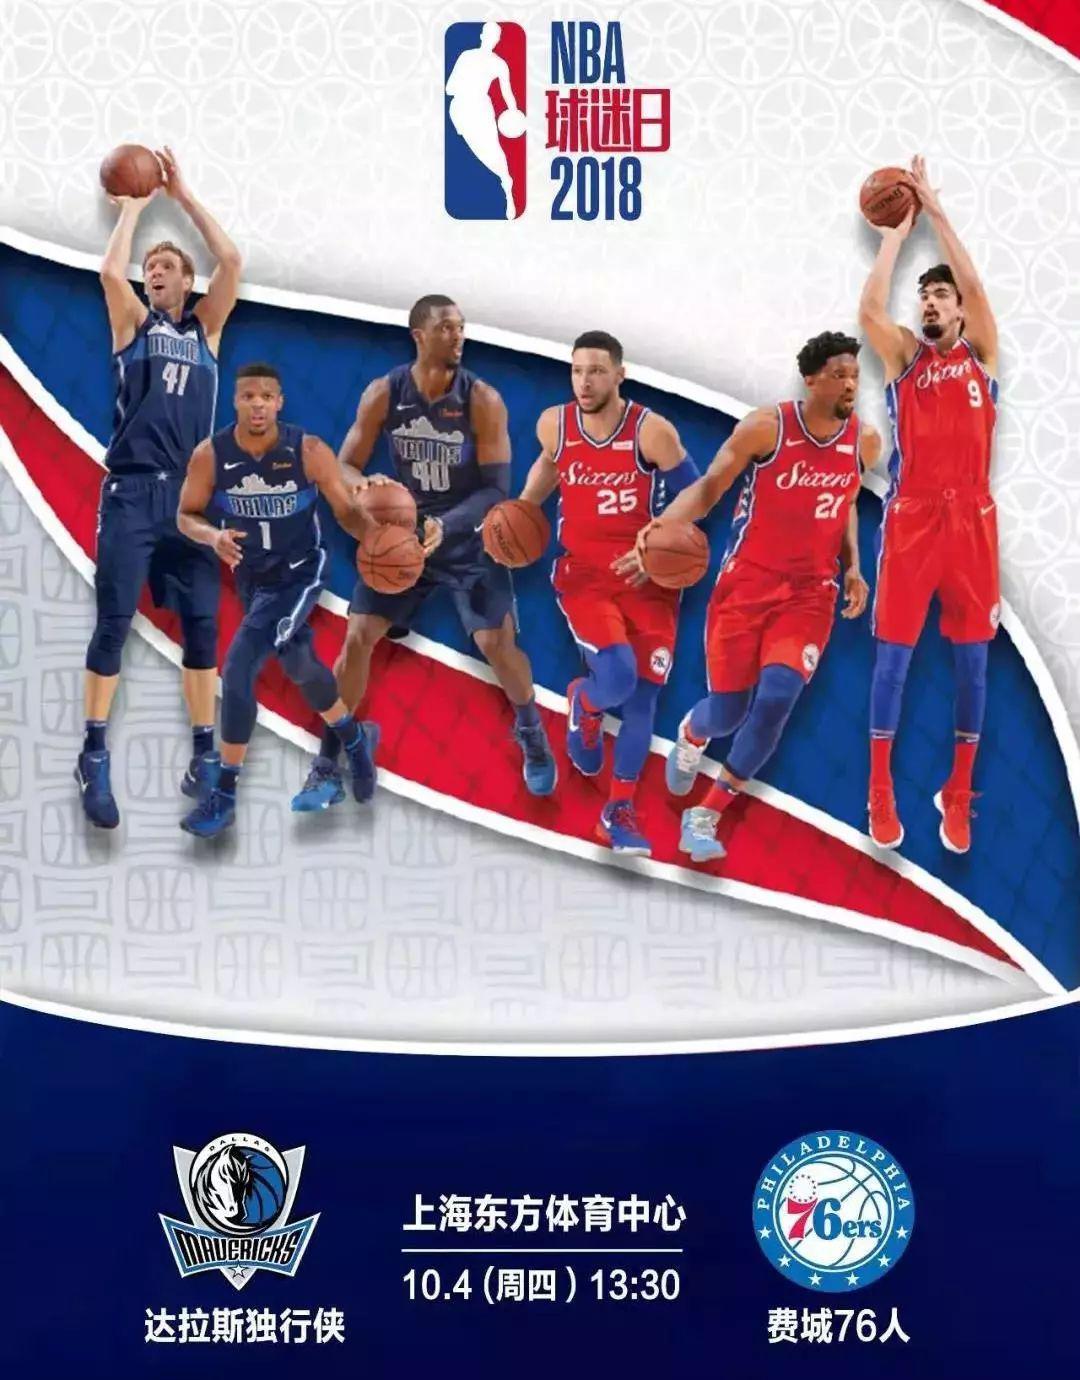 2017nba上海赛球迷日 第二波NBA球迷日门票免费送啦(2)